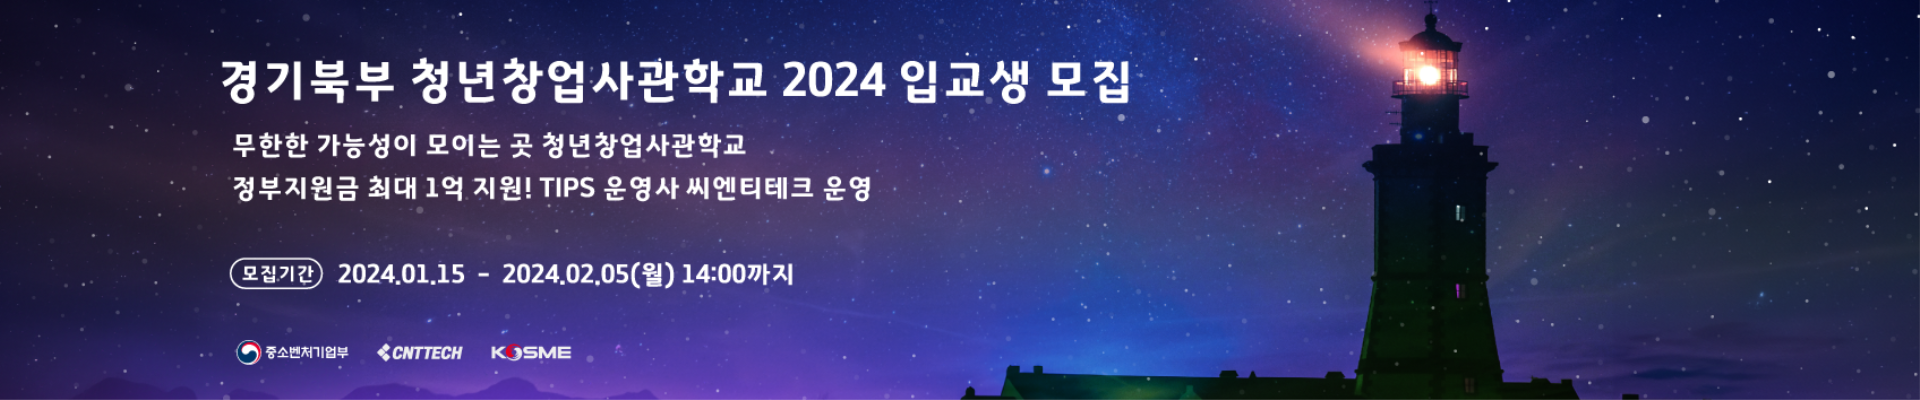 2024 경기북부 청년창업사관학교 입교생 모집